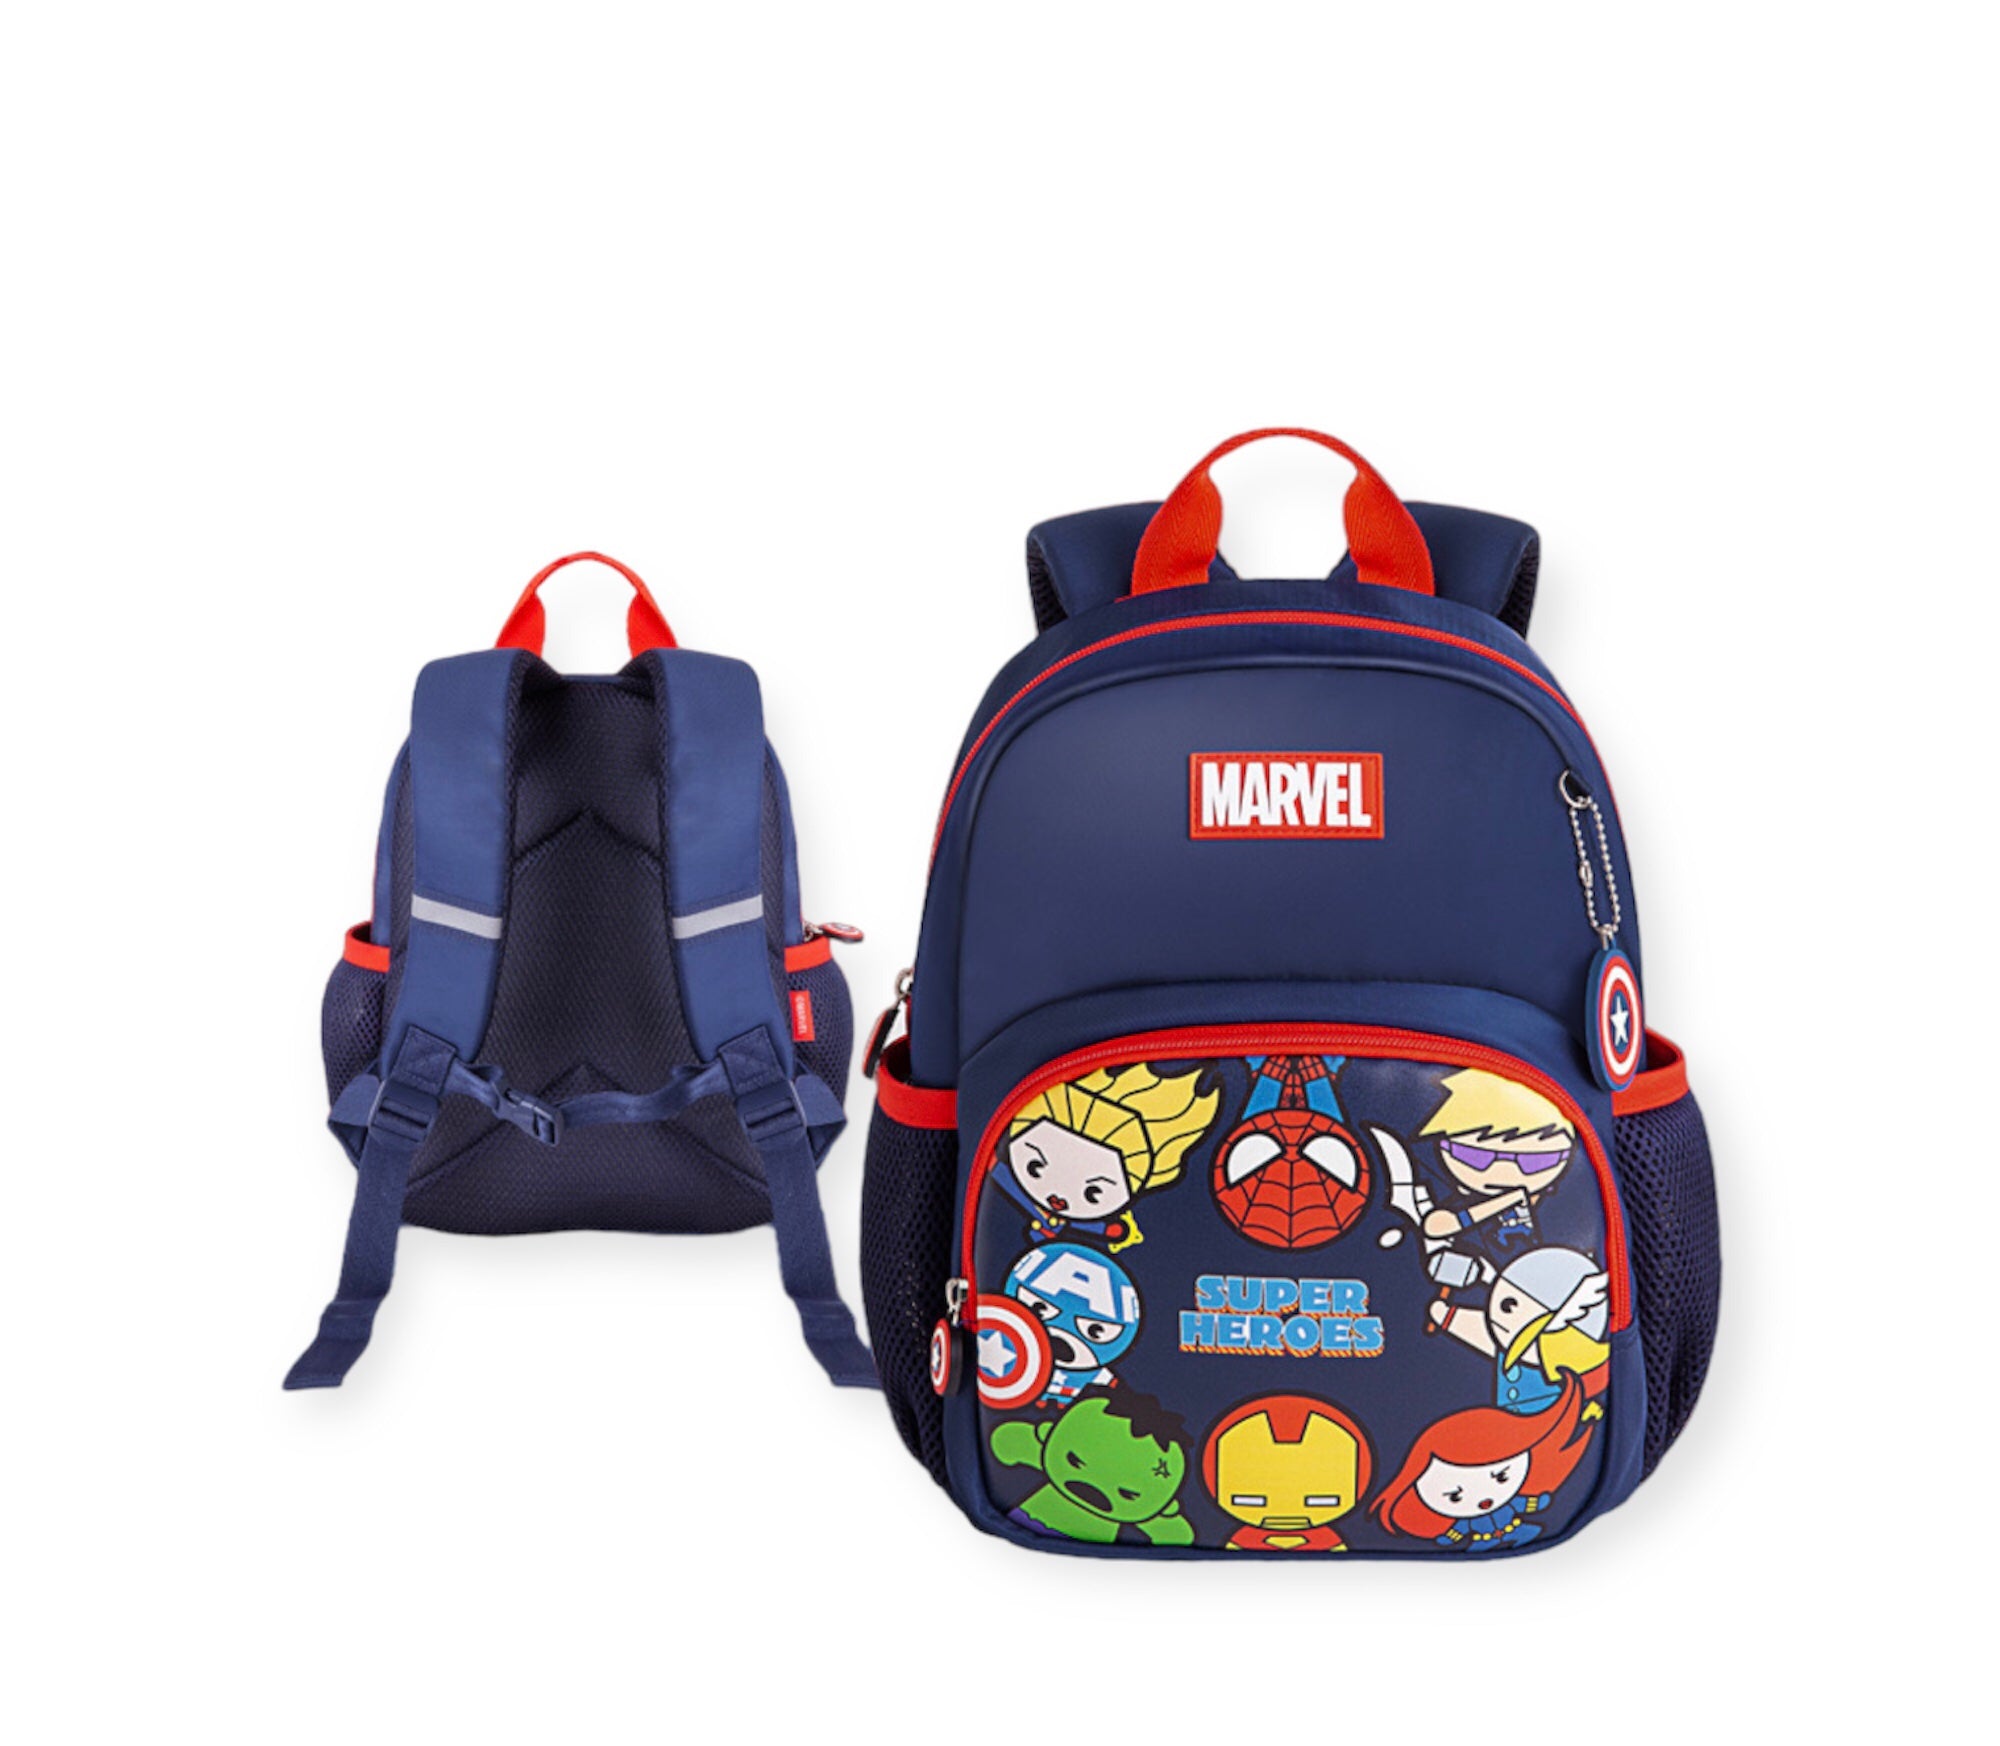 Avengers Backpack Super hero’s kids Backpack